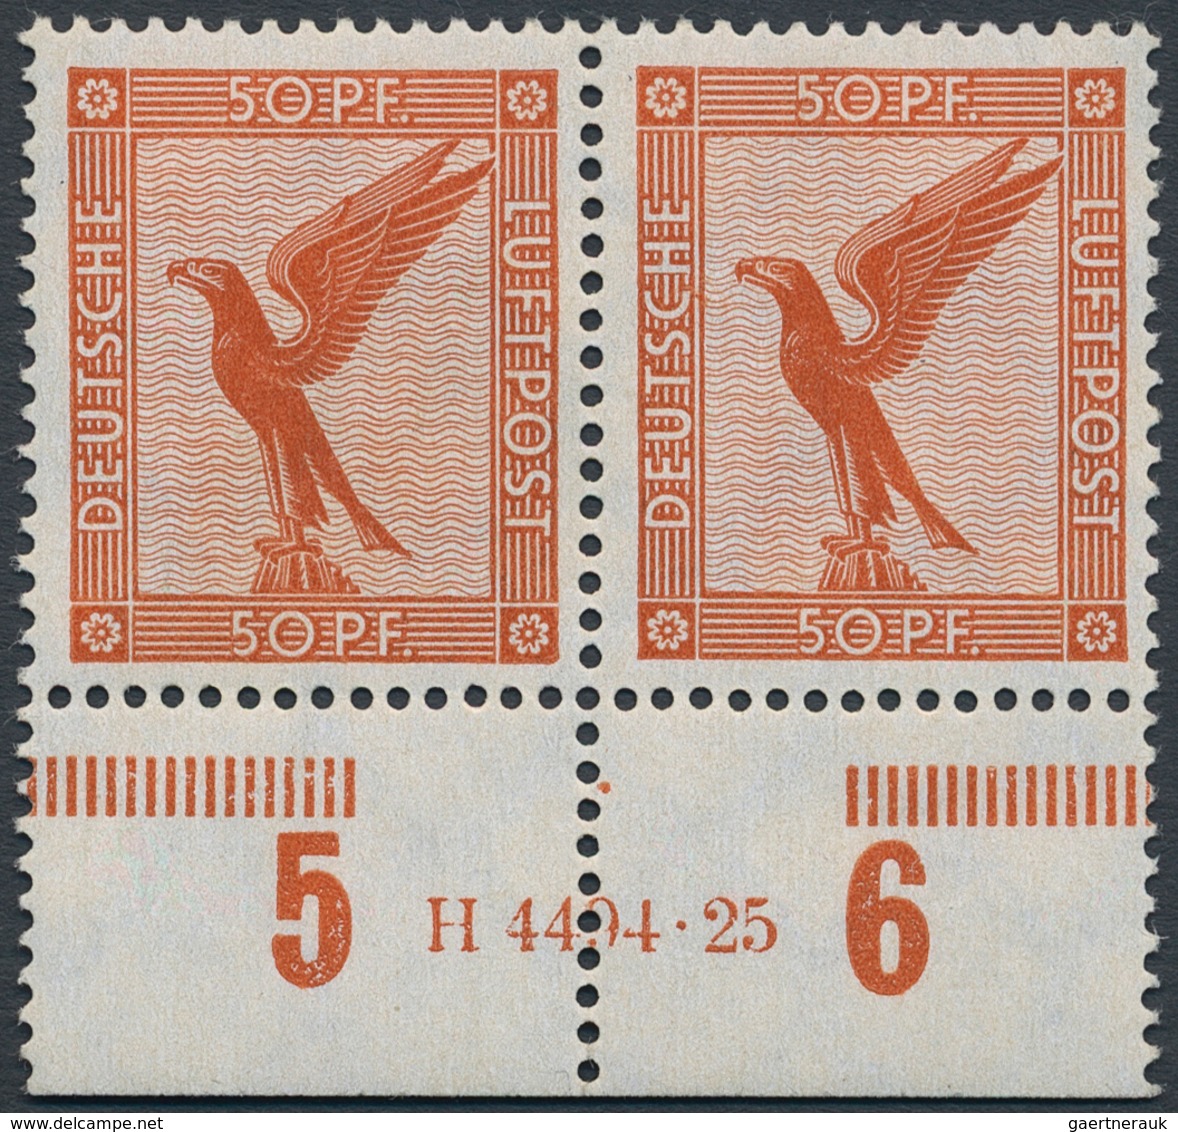 Deutsches Reich - Weimar: 1926, Flugpost 50 Pfg, Waagerechtes Postfrisches Paar Mit HAN "H 4494.25", - Neufs